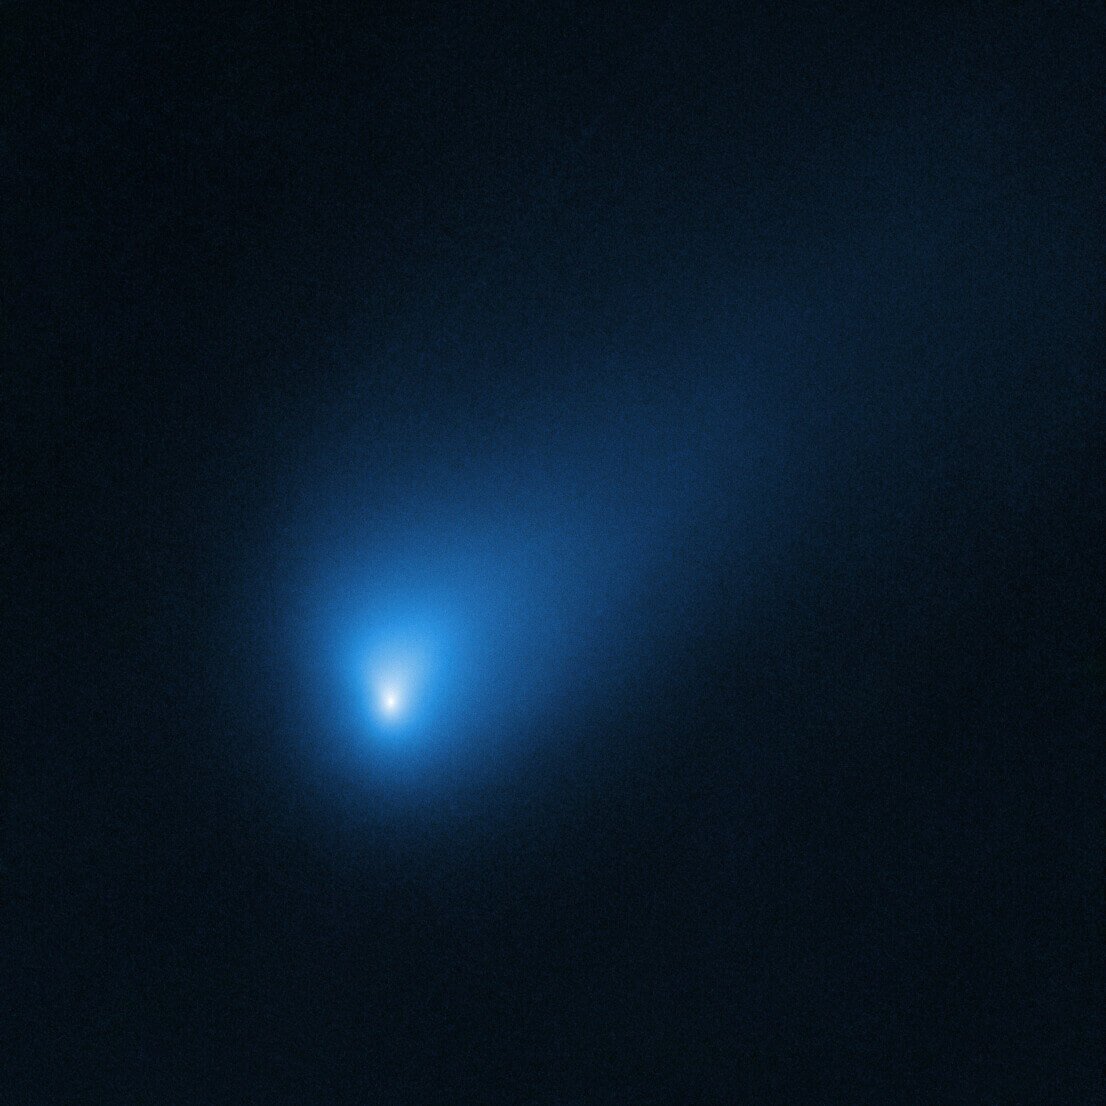 2019年10月12日に撮影した「ボリソフ彗星」